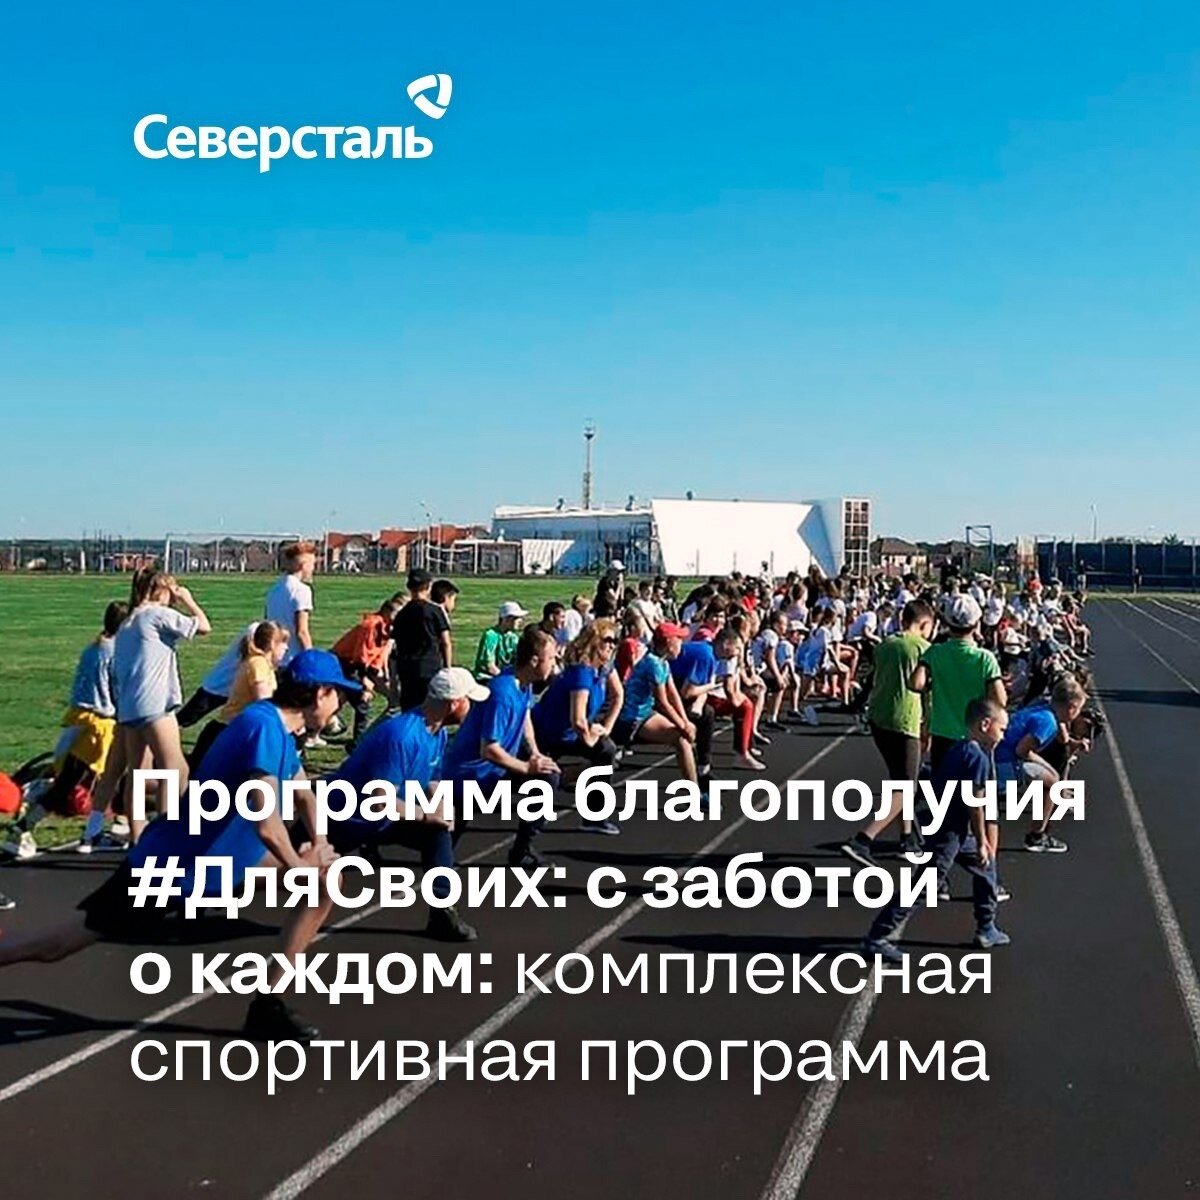   Развитие спорта – часть комплексной программы поддержки сотрудников «Для своих: с заботой о каждом», на которую «Северсталь направила около 15 млрд рублей.